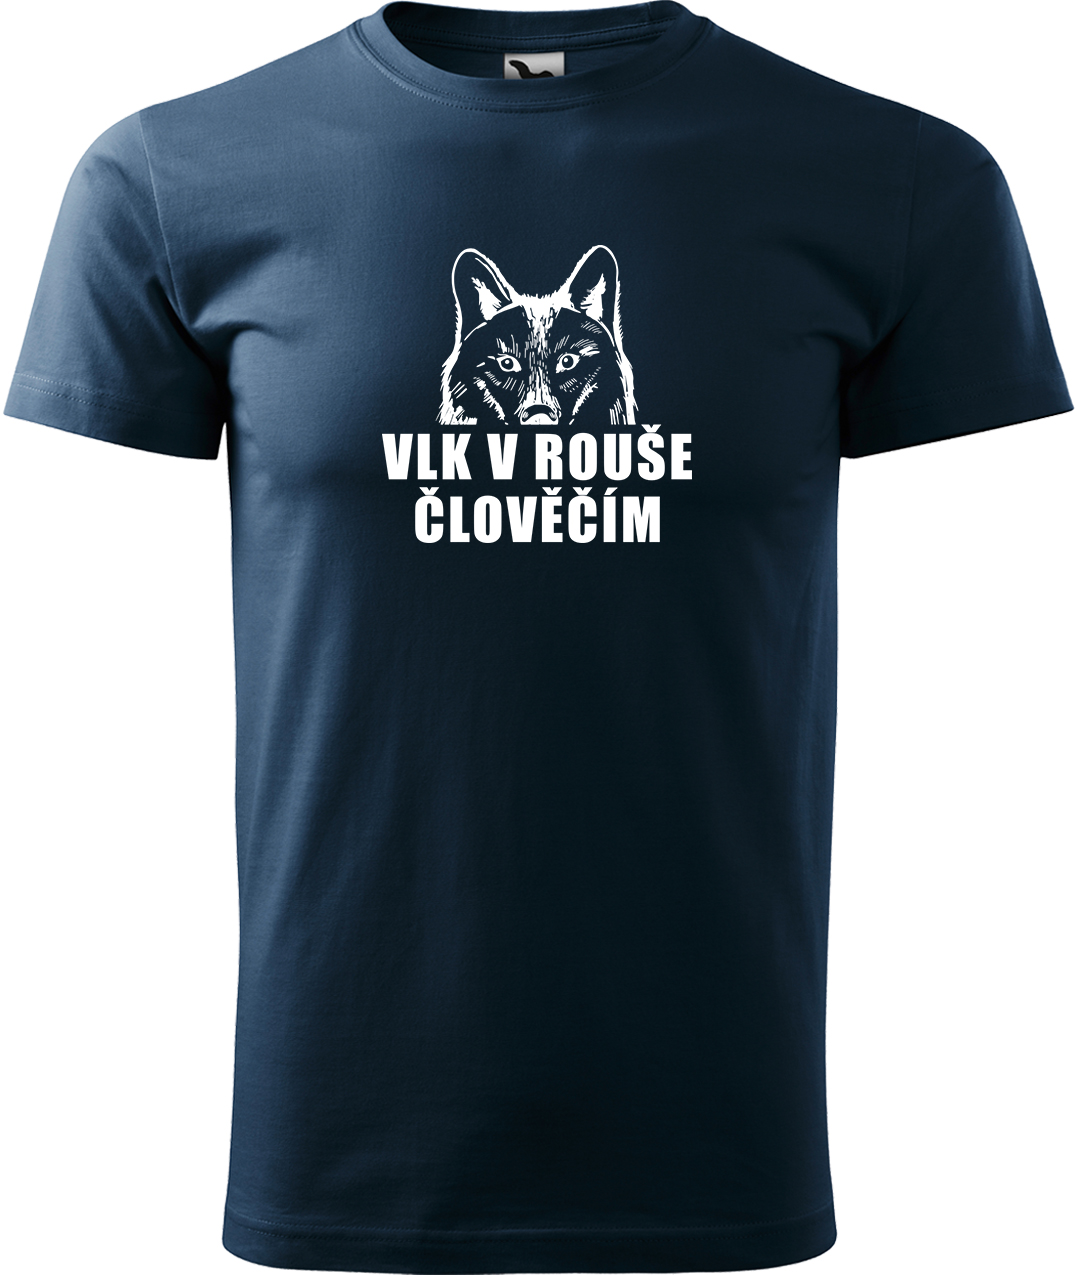 Pánské tričko s vlkem - Vlk v rouše člověčím Velikost: 4XL, Barva: Námořní modrá (02), Střih: pánský